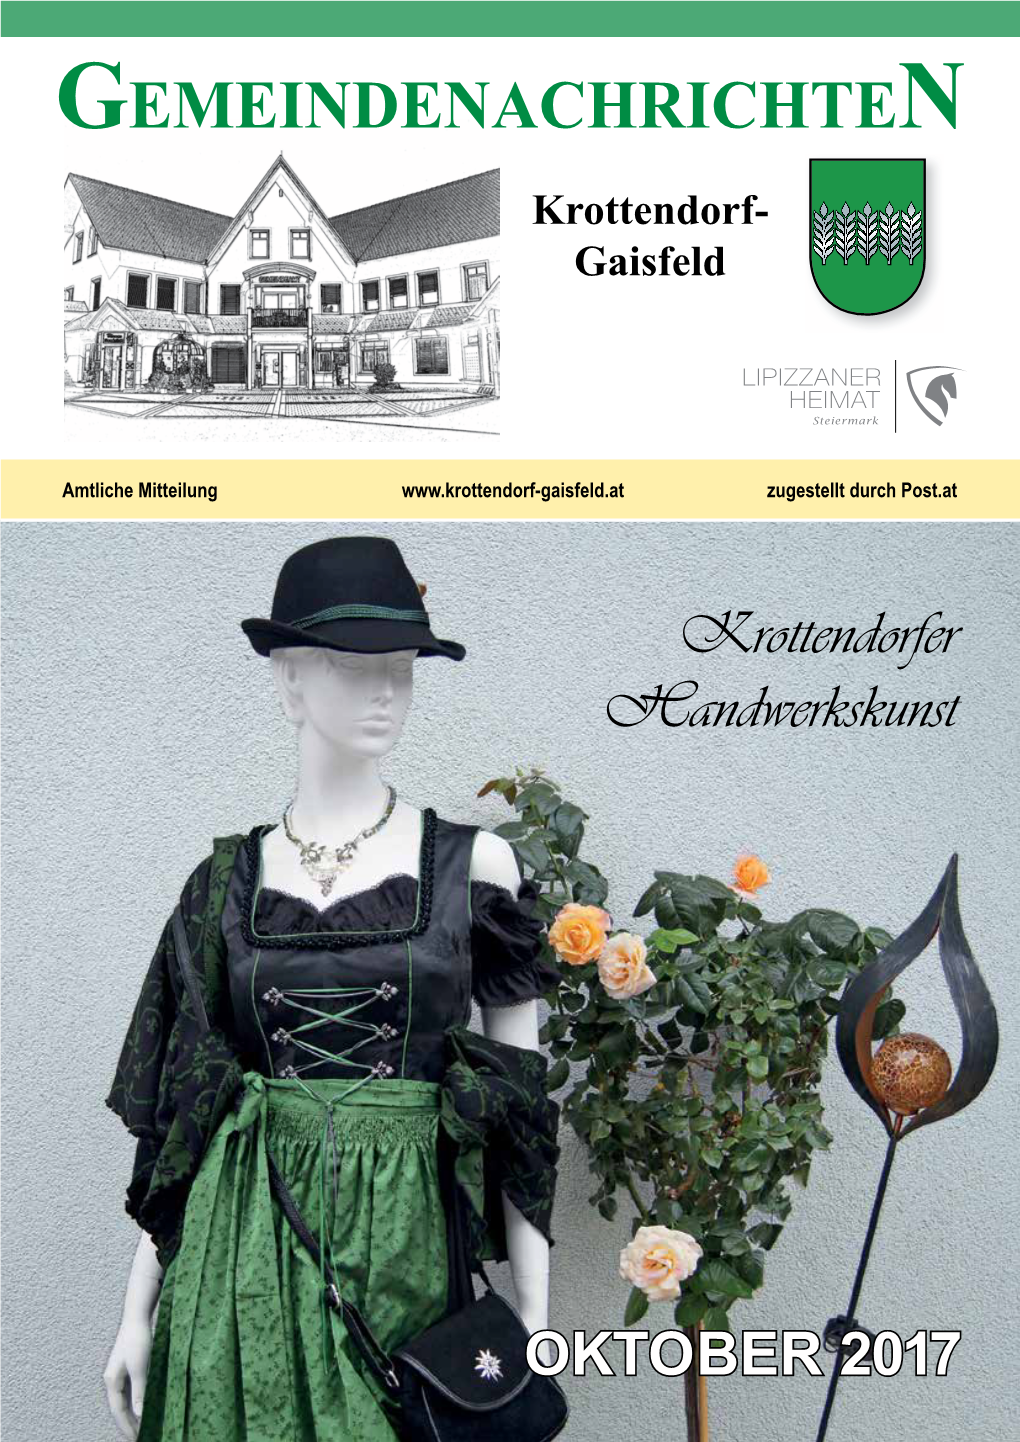 GEMEINDENACHRICHTEN Krottendorf- Gaisfeld